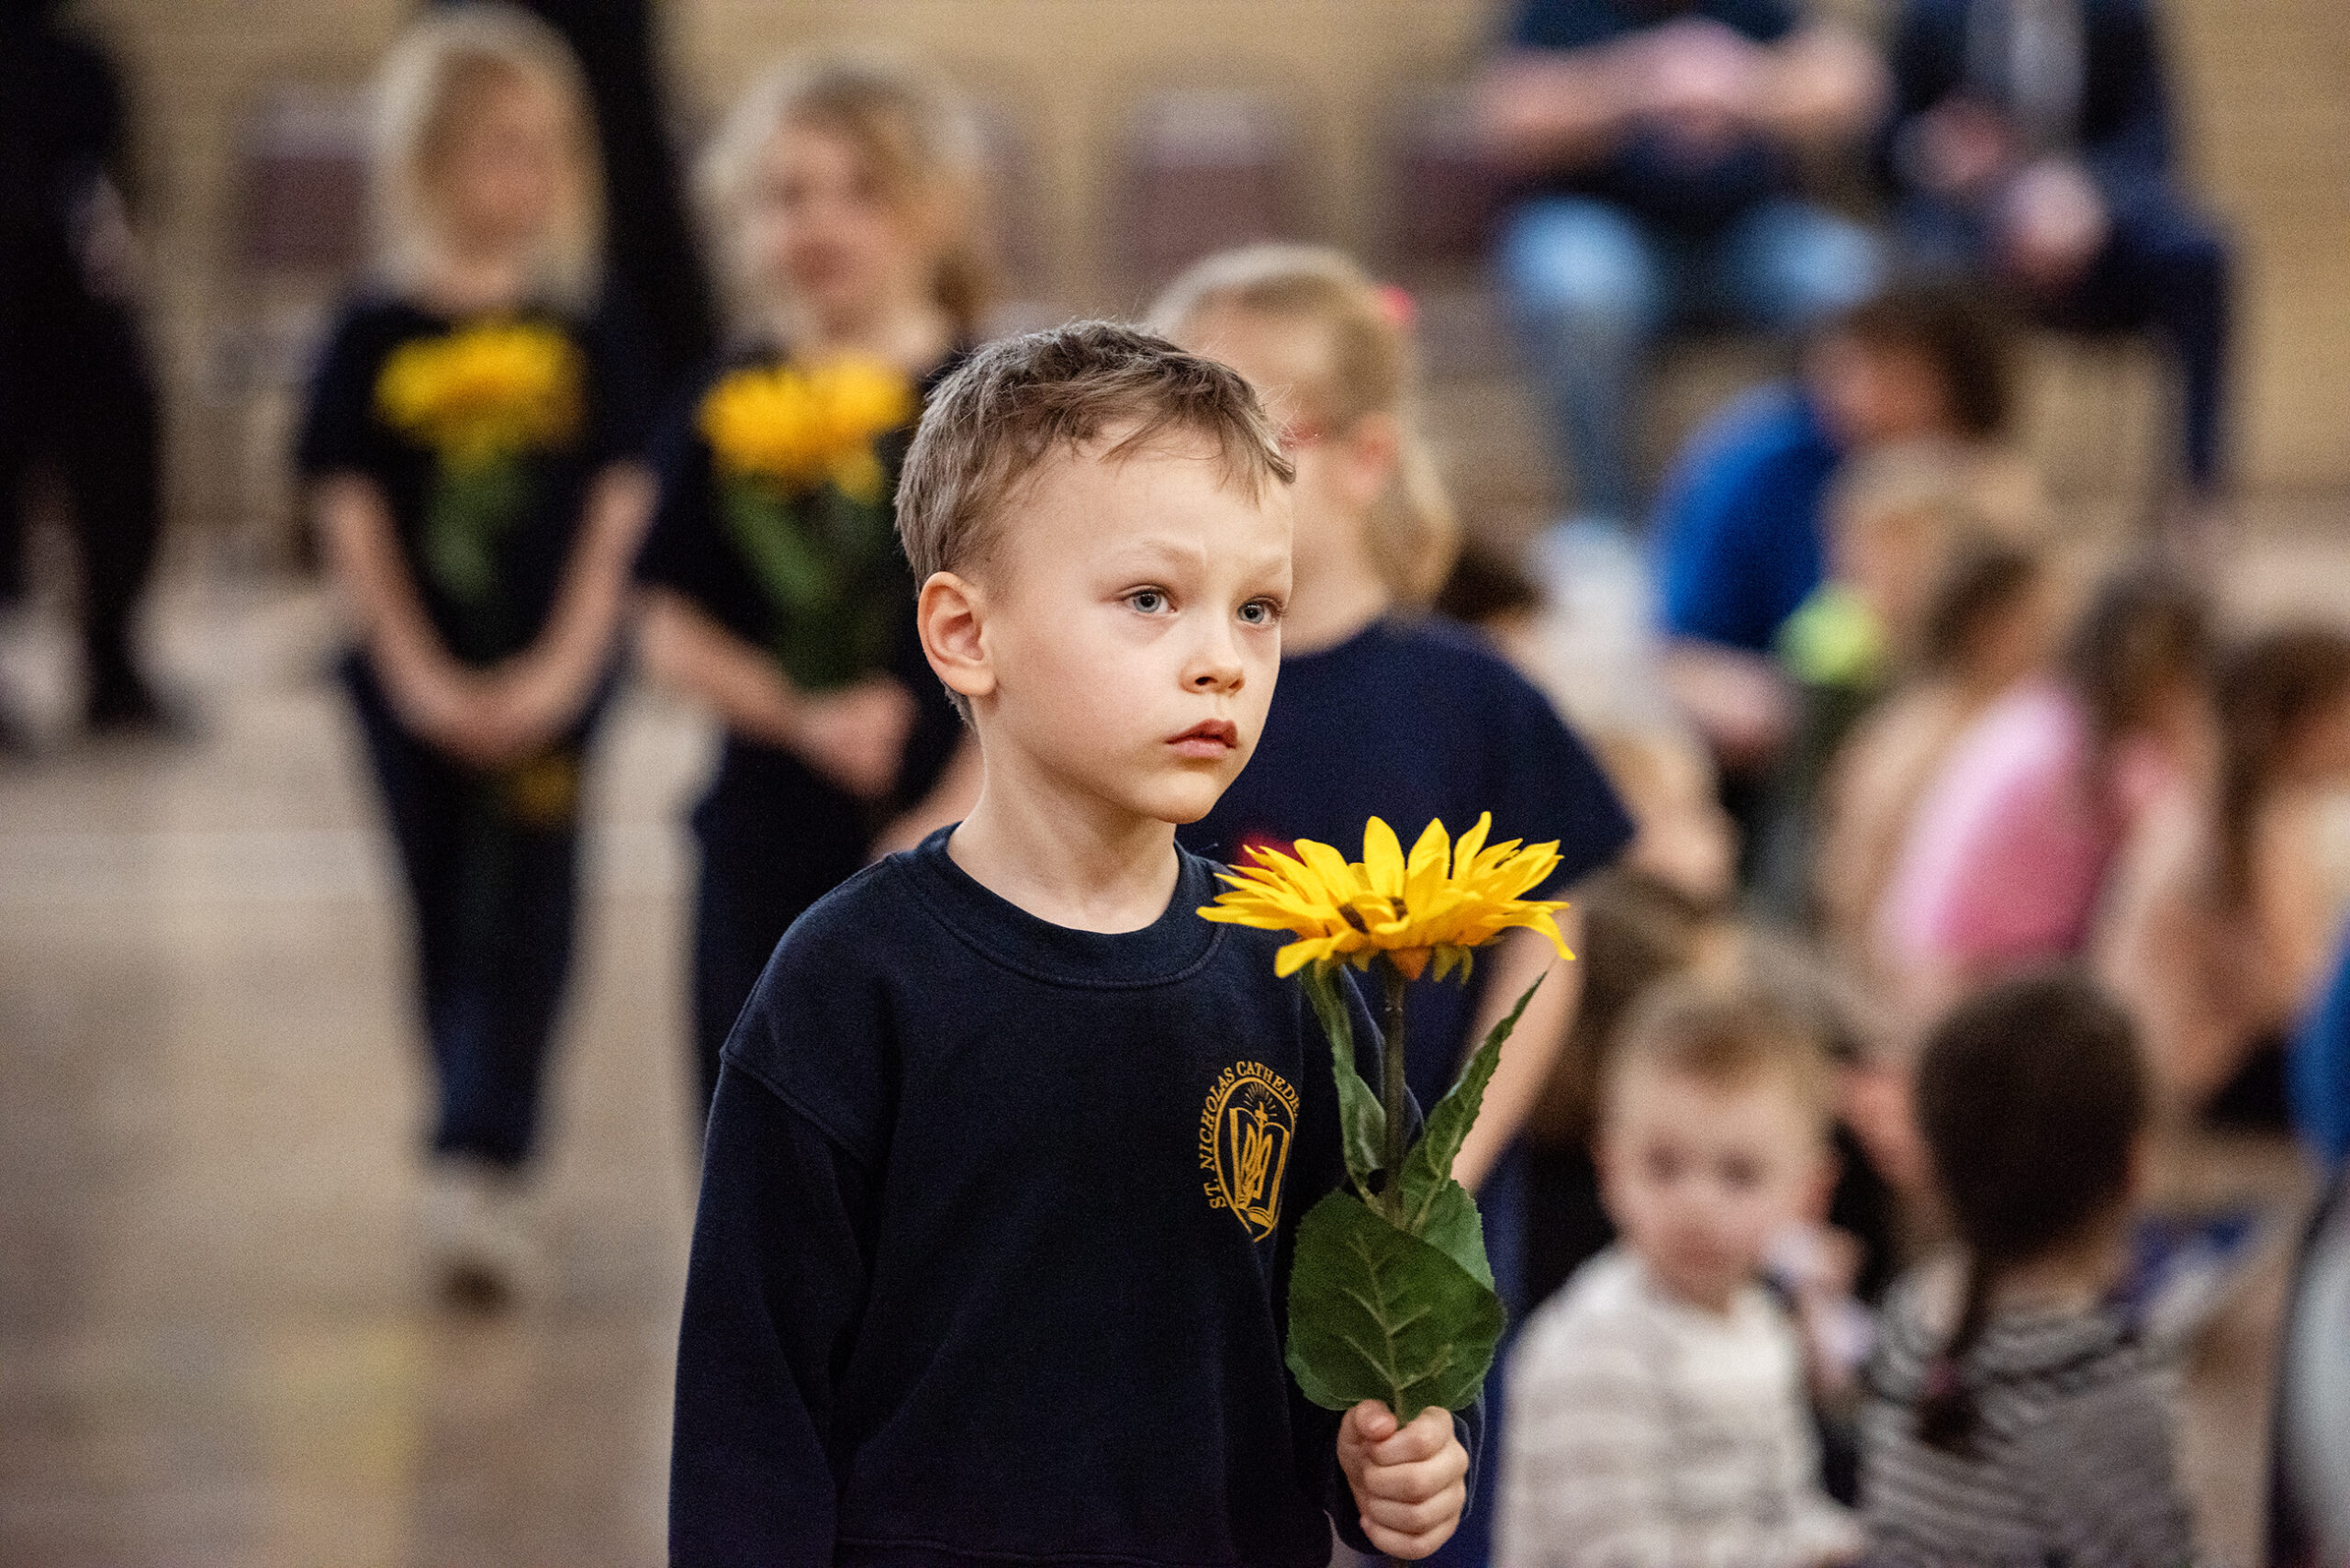 A boy holds a sunflower